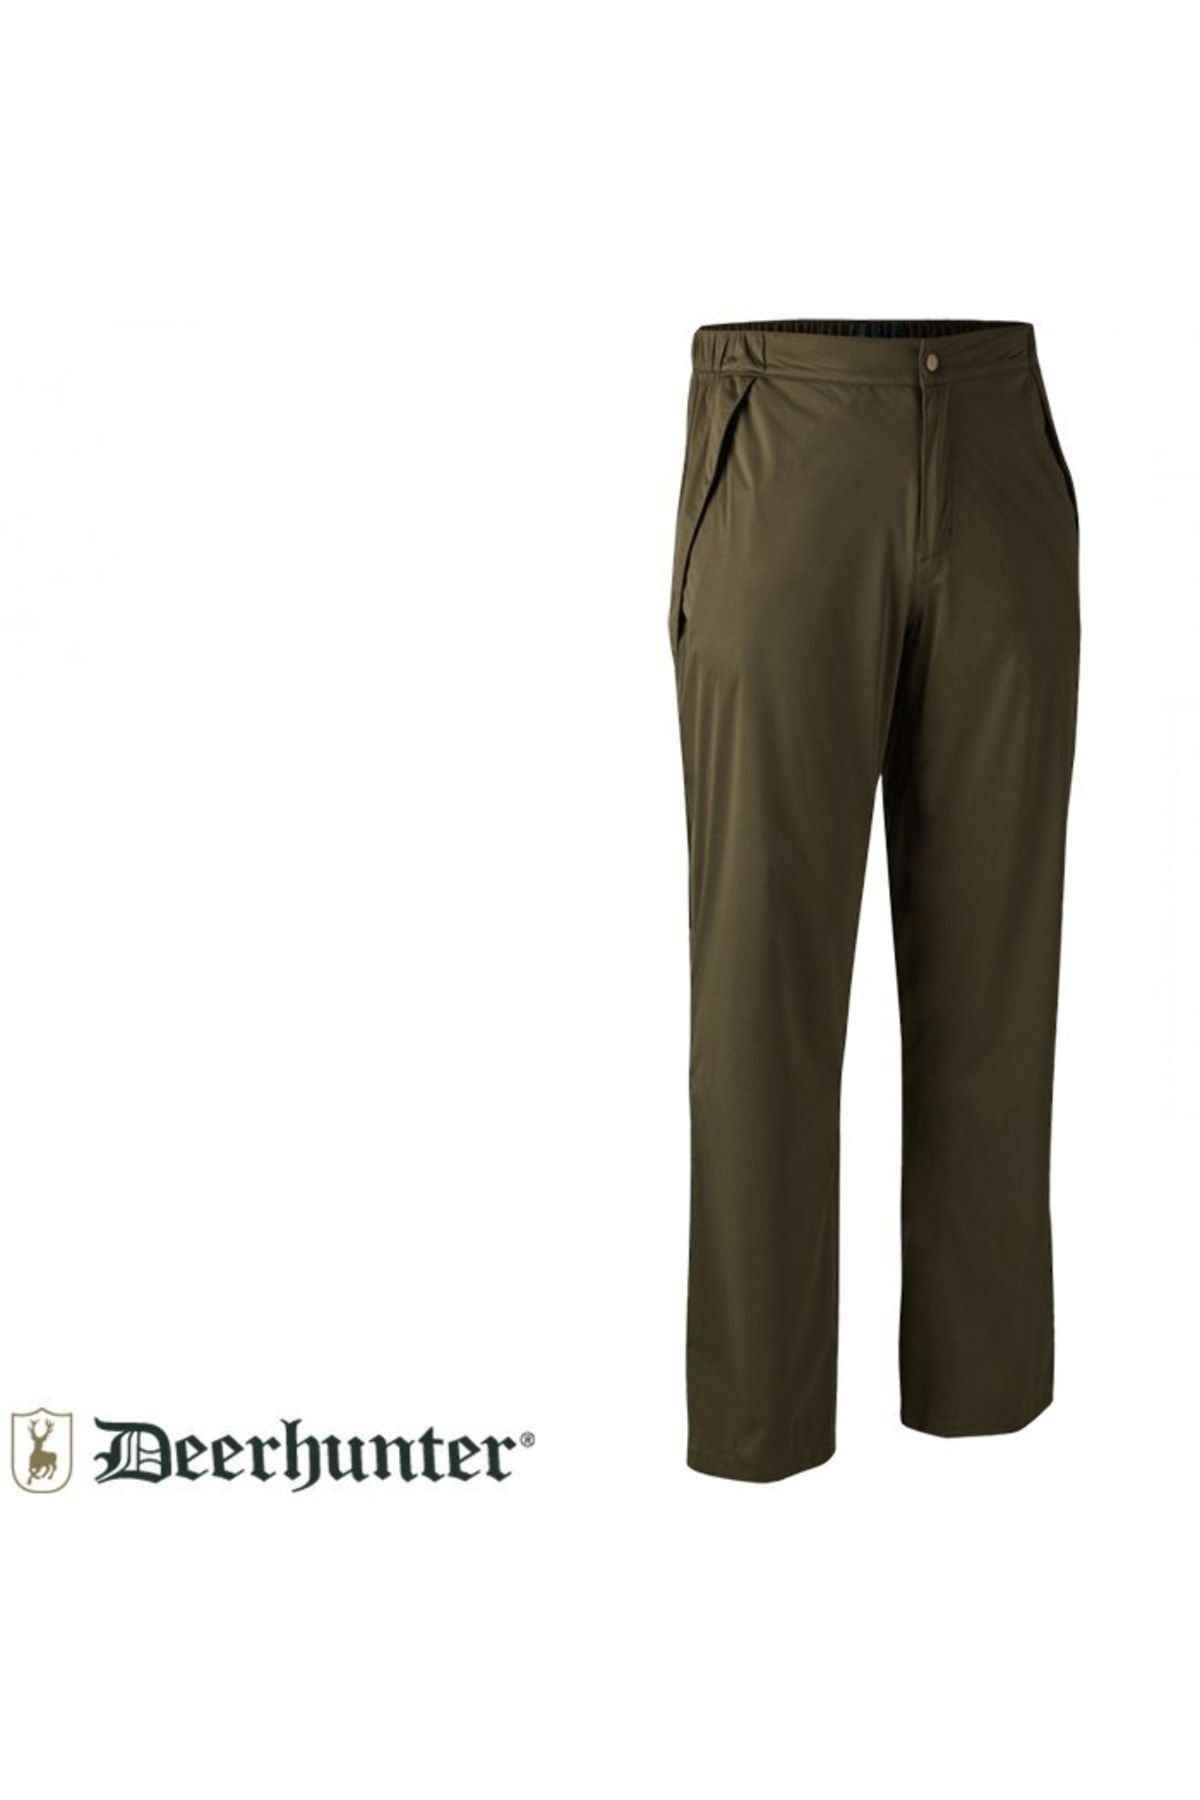 Deerhunter Thunder Yağmour Pantolonu Yeşil - Xl